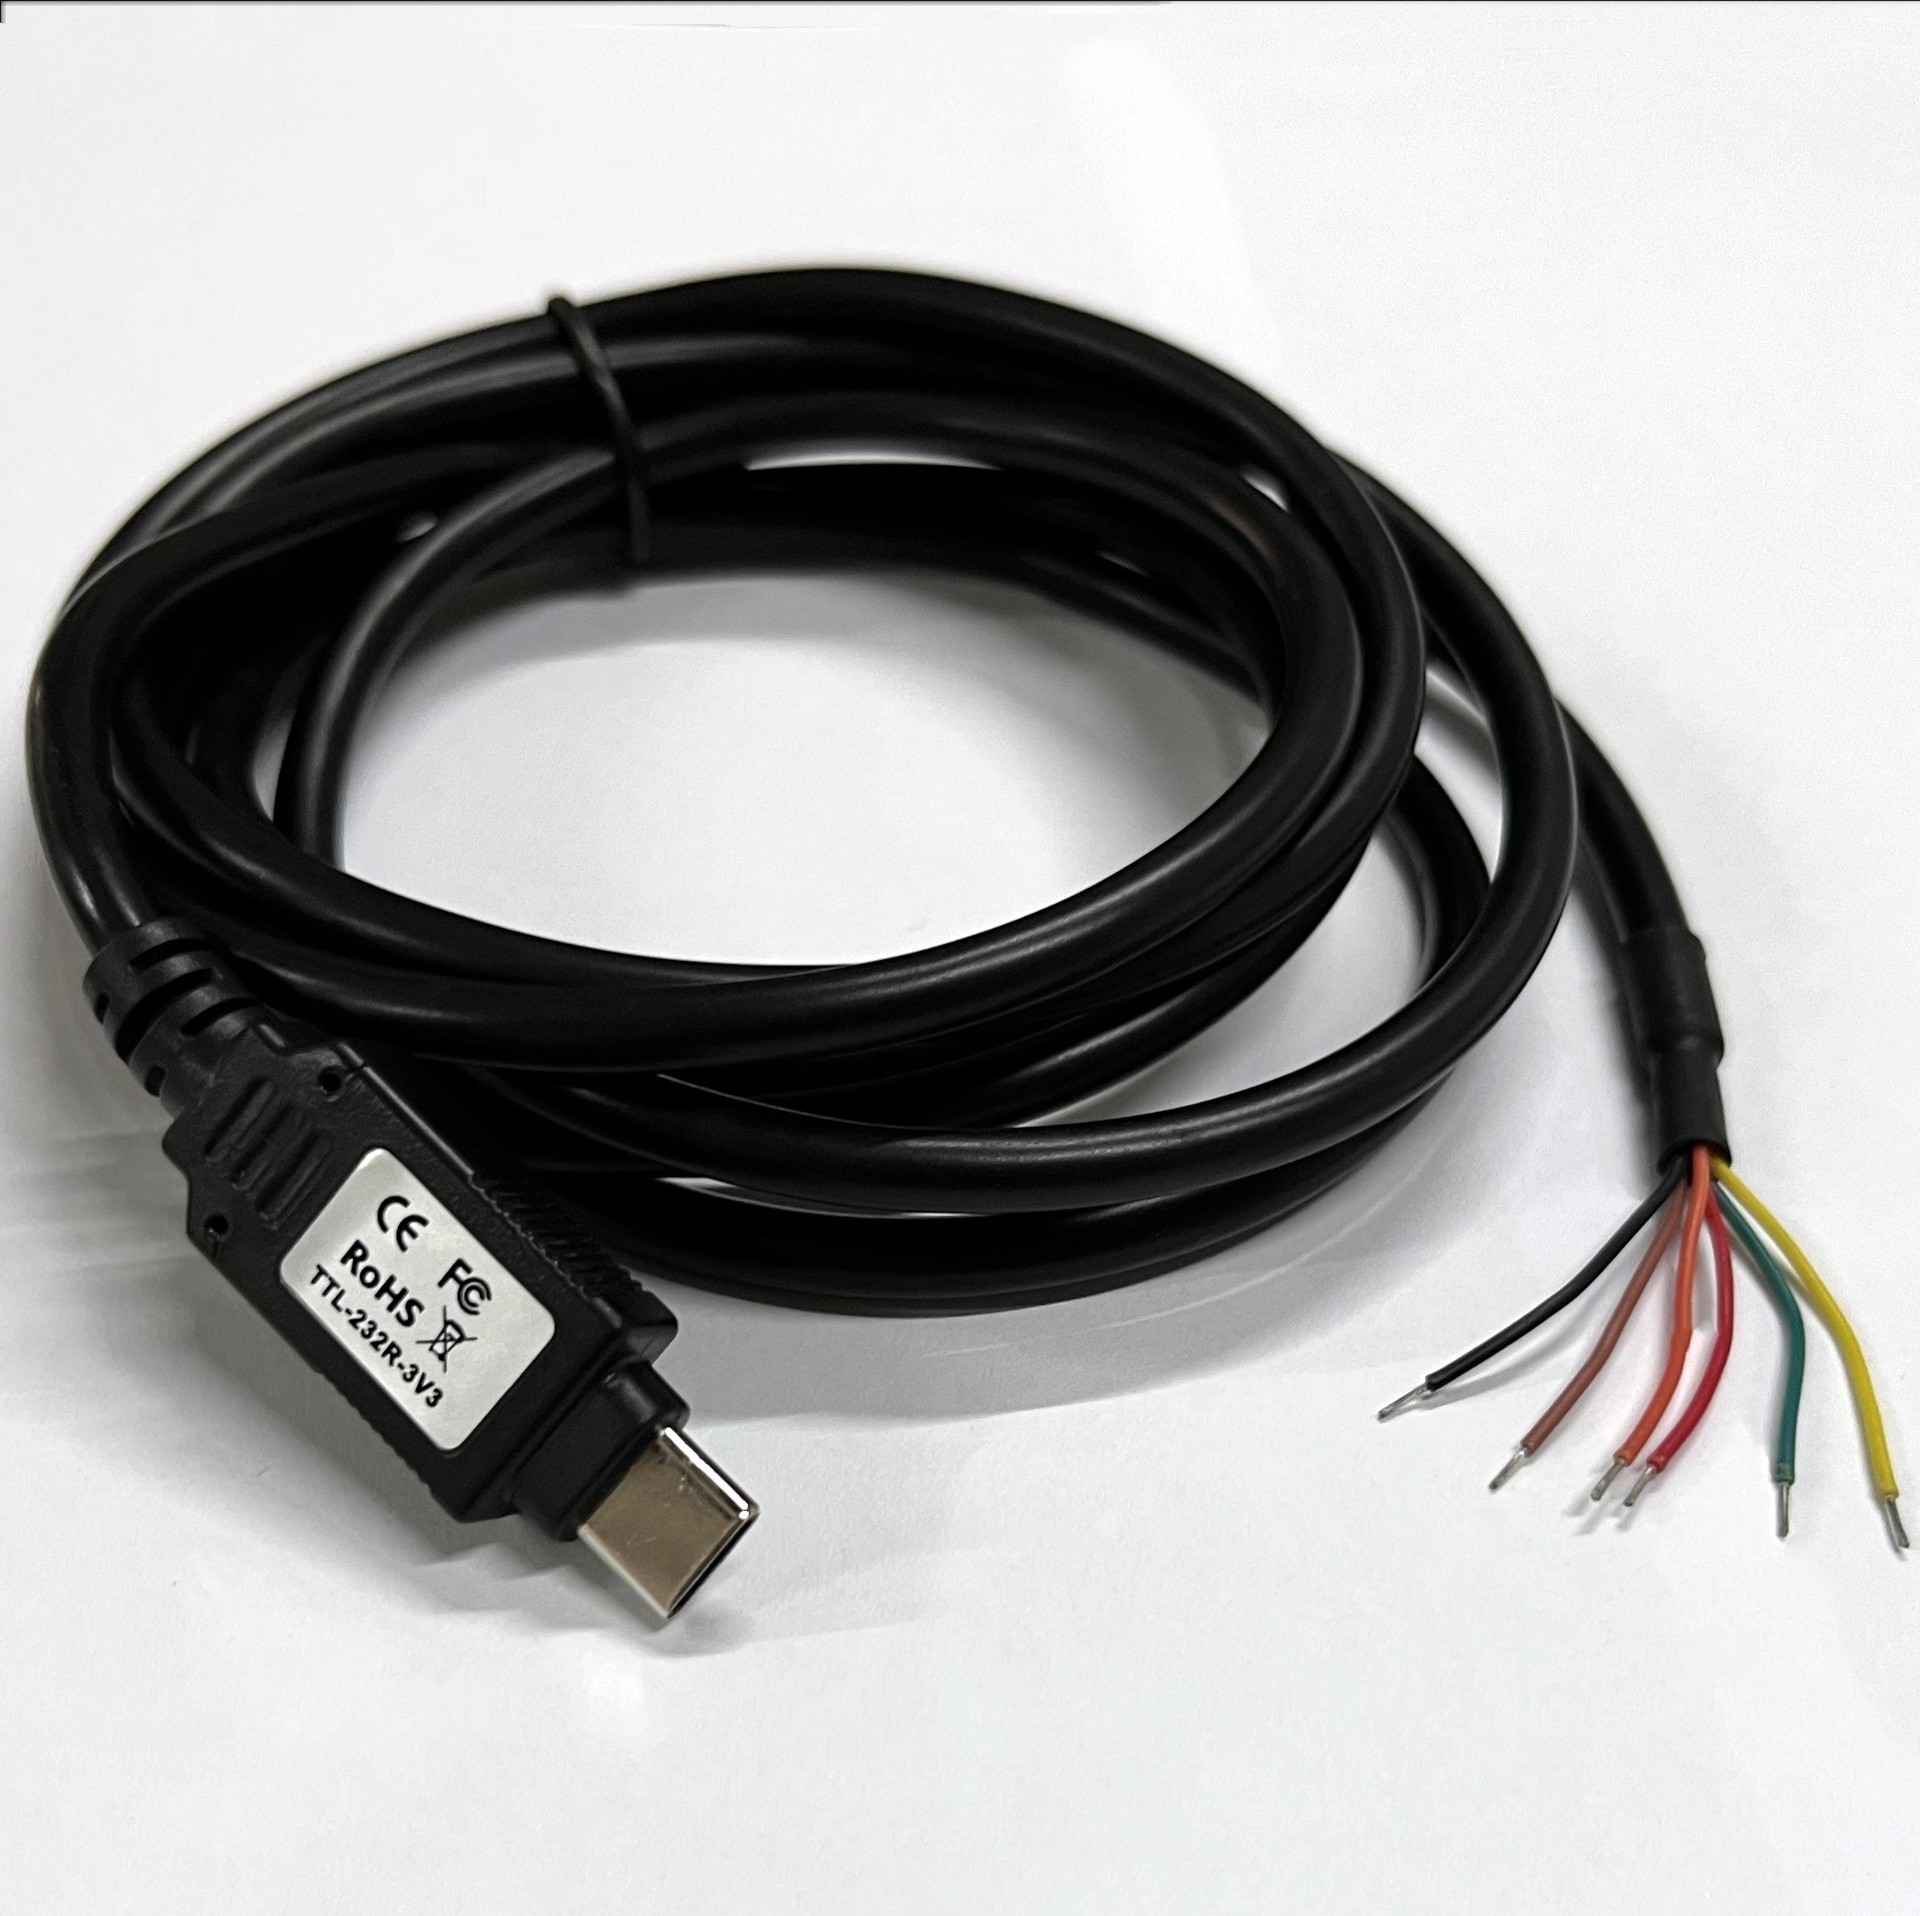 TTL-232R-3V3/5V，TTL Serial Cable 3v3/5V, 1.8M, FTDI原装芯片